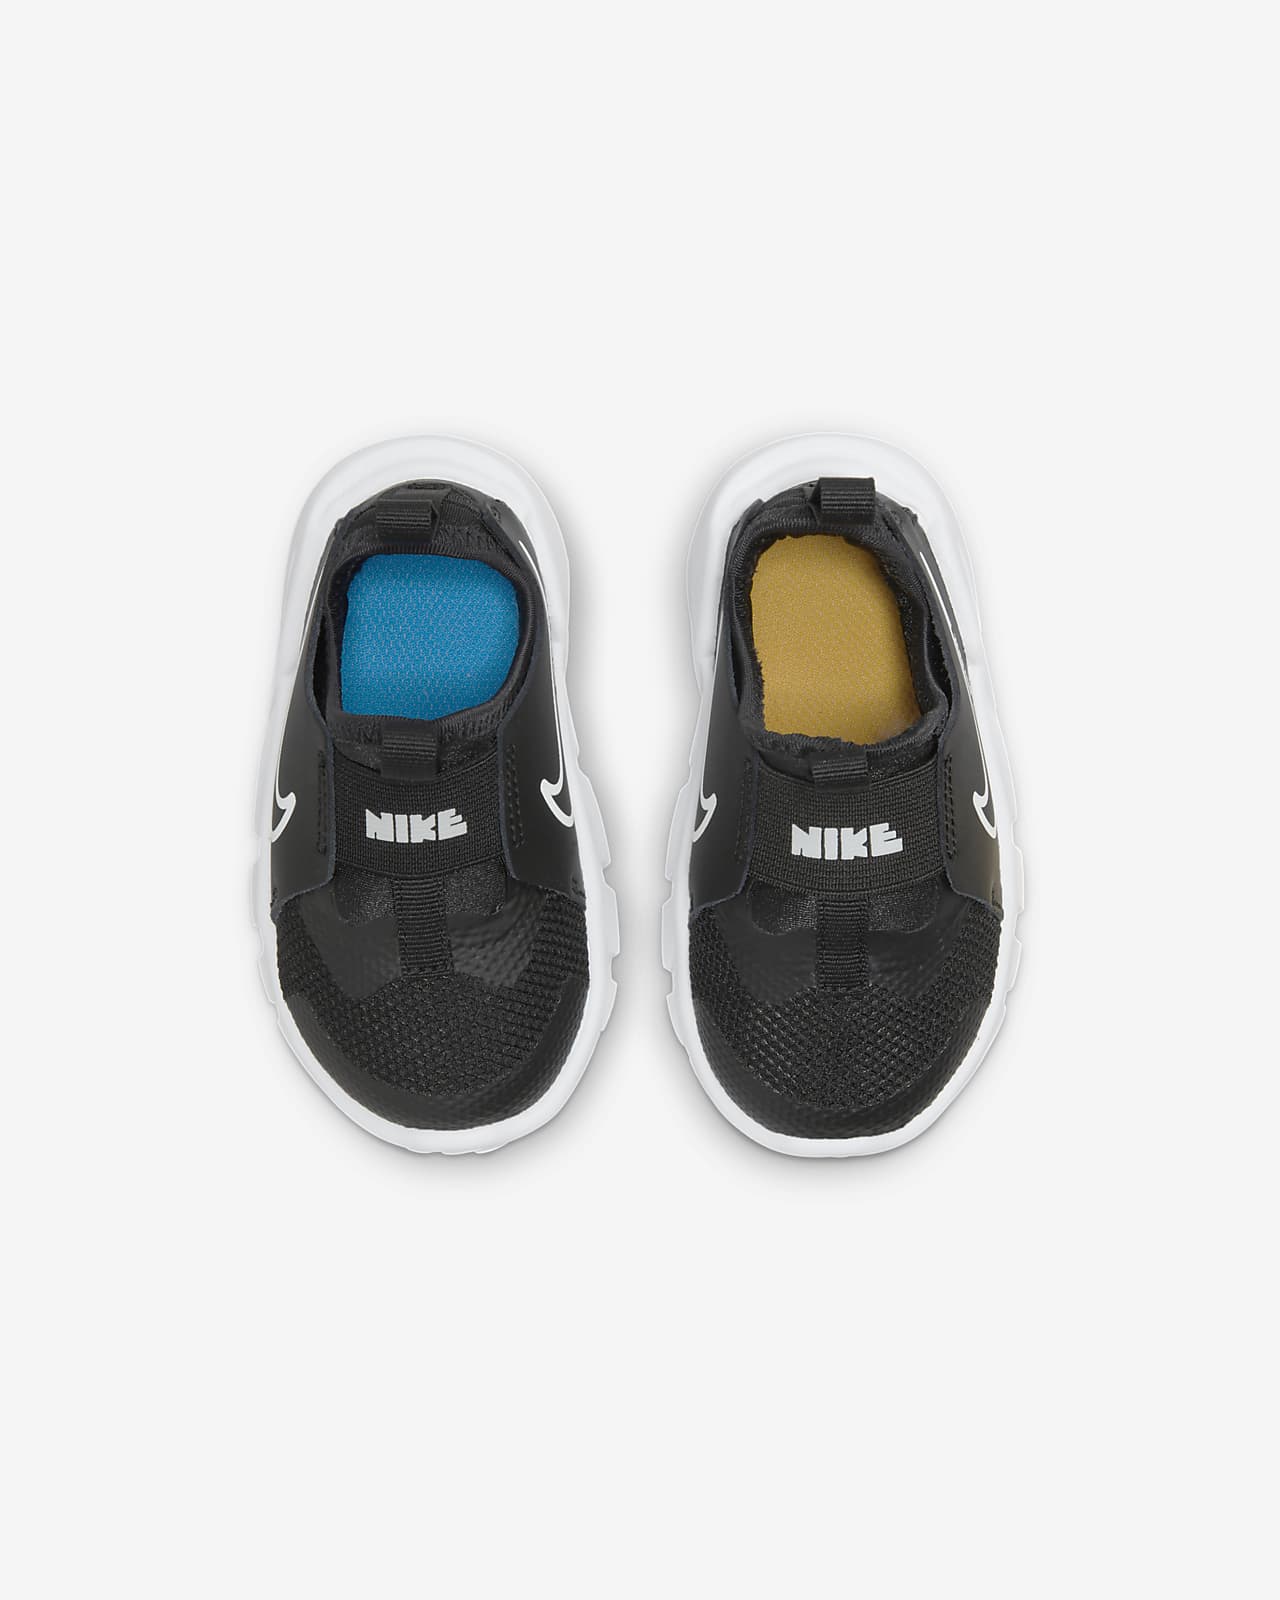 tile President Meander Nike Flex Runner 2 Baby/Toddler Shoes. Nike.com